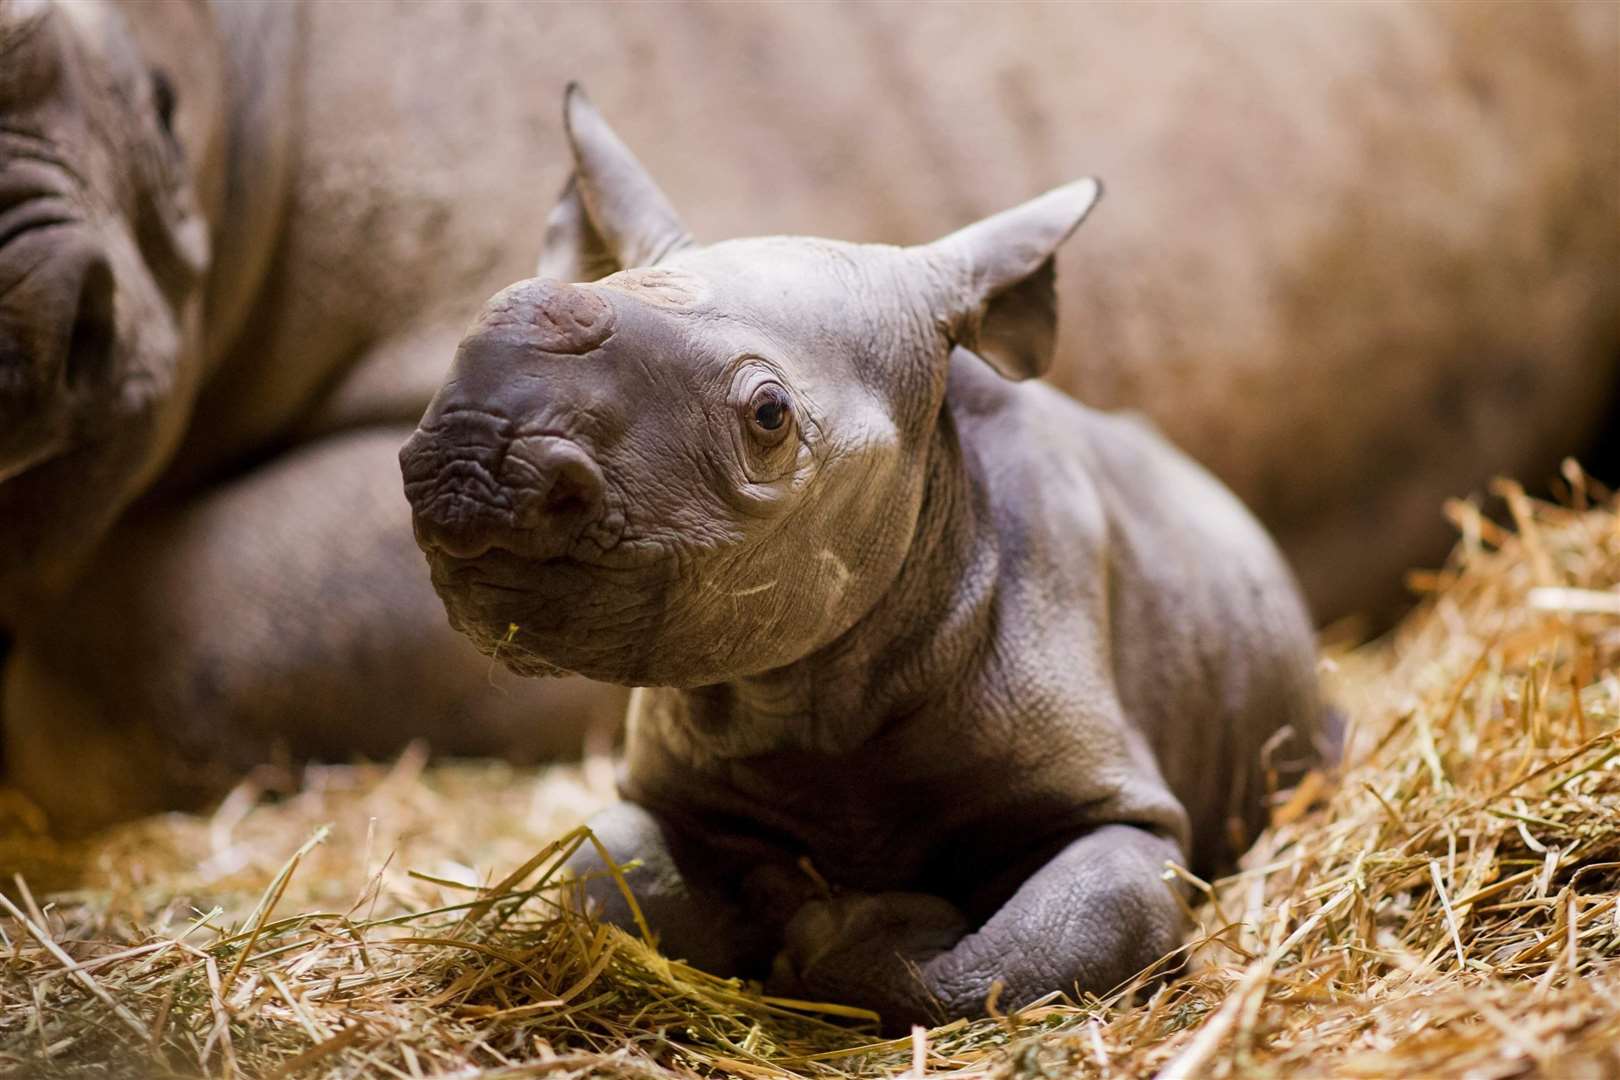 The 40th black rhino born at Port Lympne in 2018